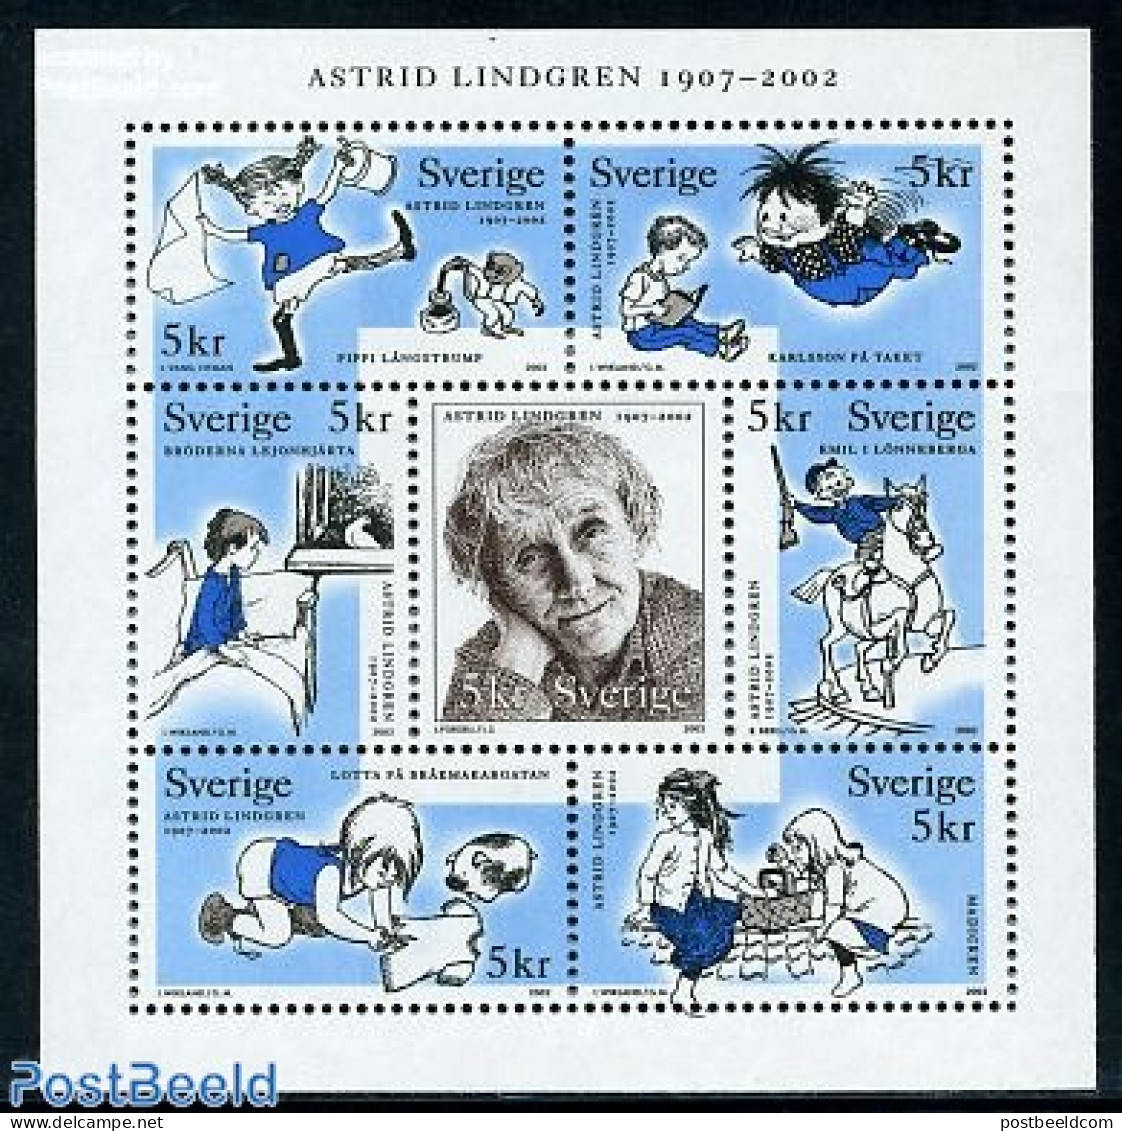 Sweden 2002 Astrid Lindgren 7v M/s, Mint NH, Art - Children's Books Illustrations - Ongebruikt